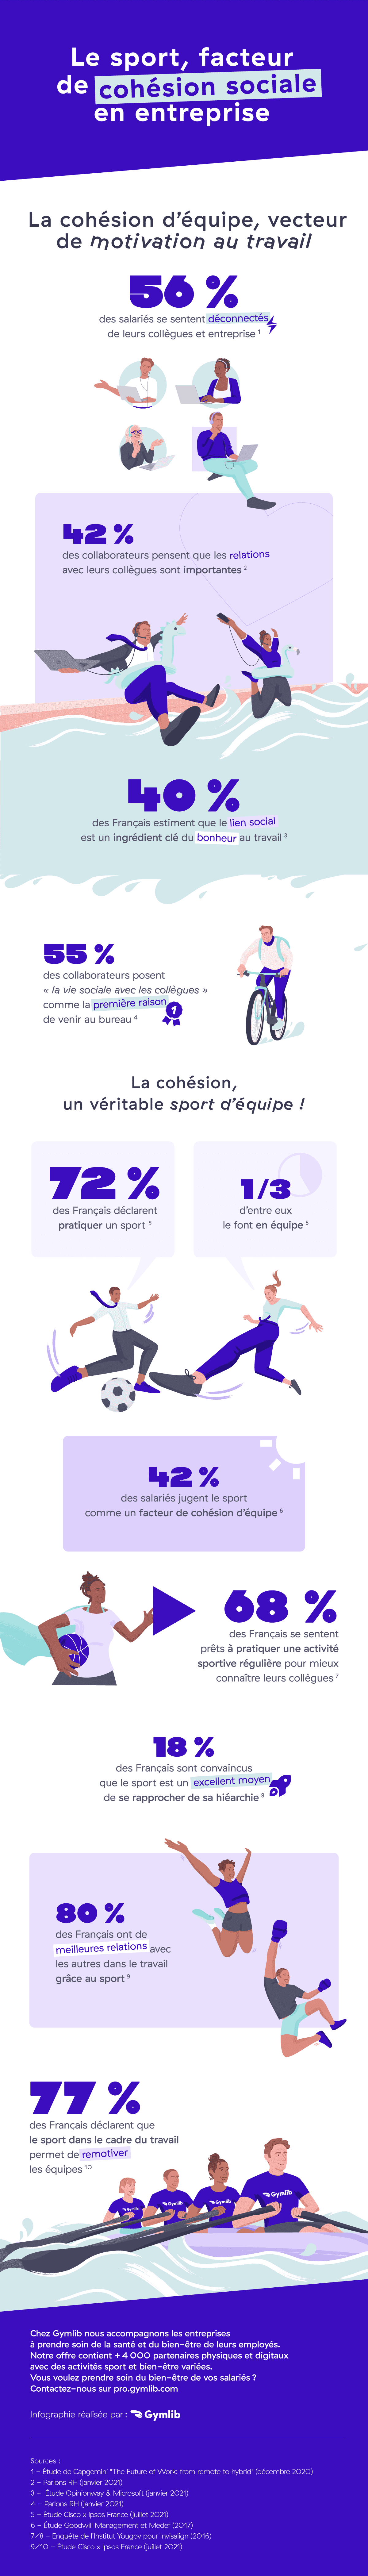 Infographie : Le sport, facteur de cohésion sociale en entreprise 